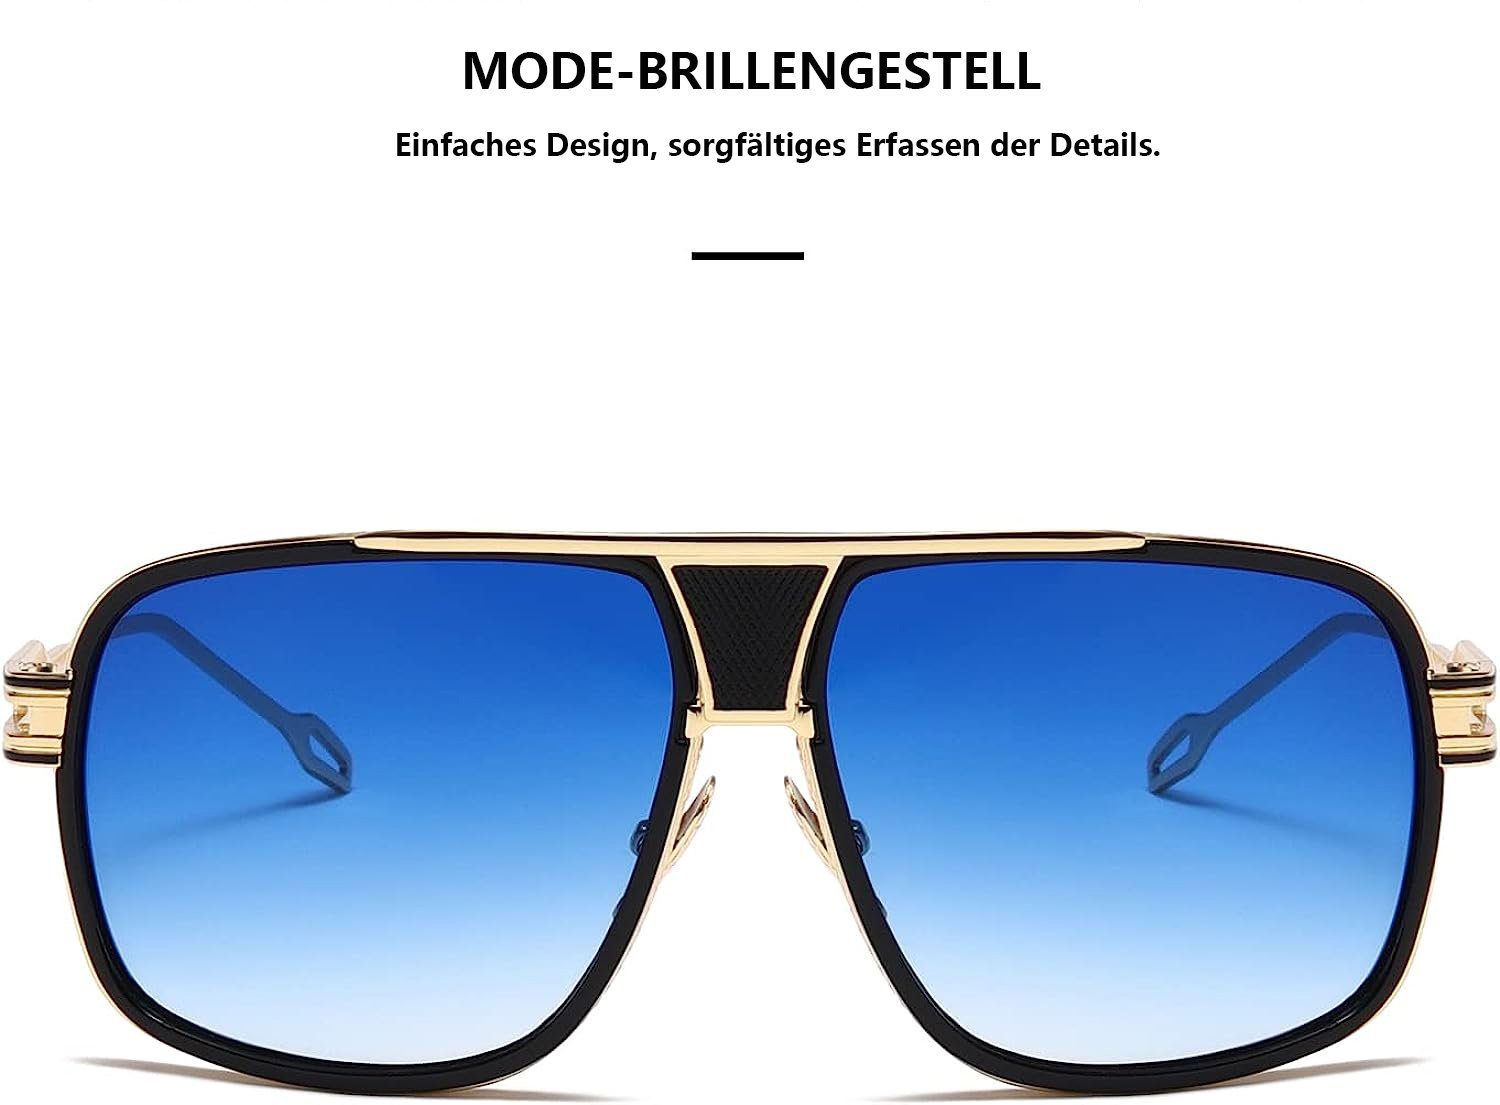 Jormftte Sonnenbrille Polarisierte Sonnenbrille für Blau UV400 und Herren Retro,modisch Damen